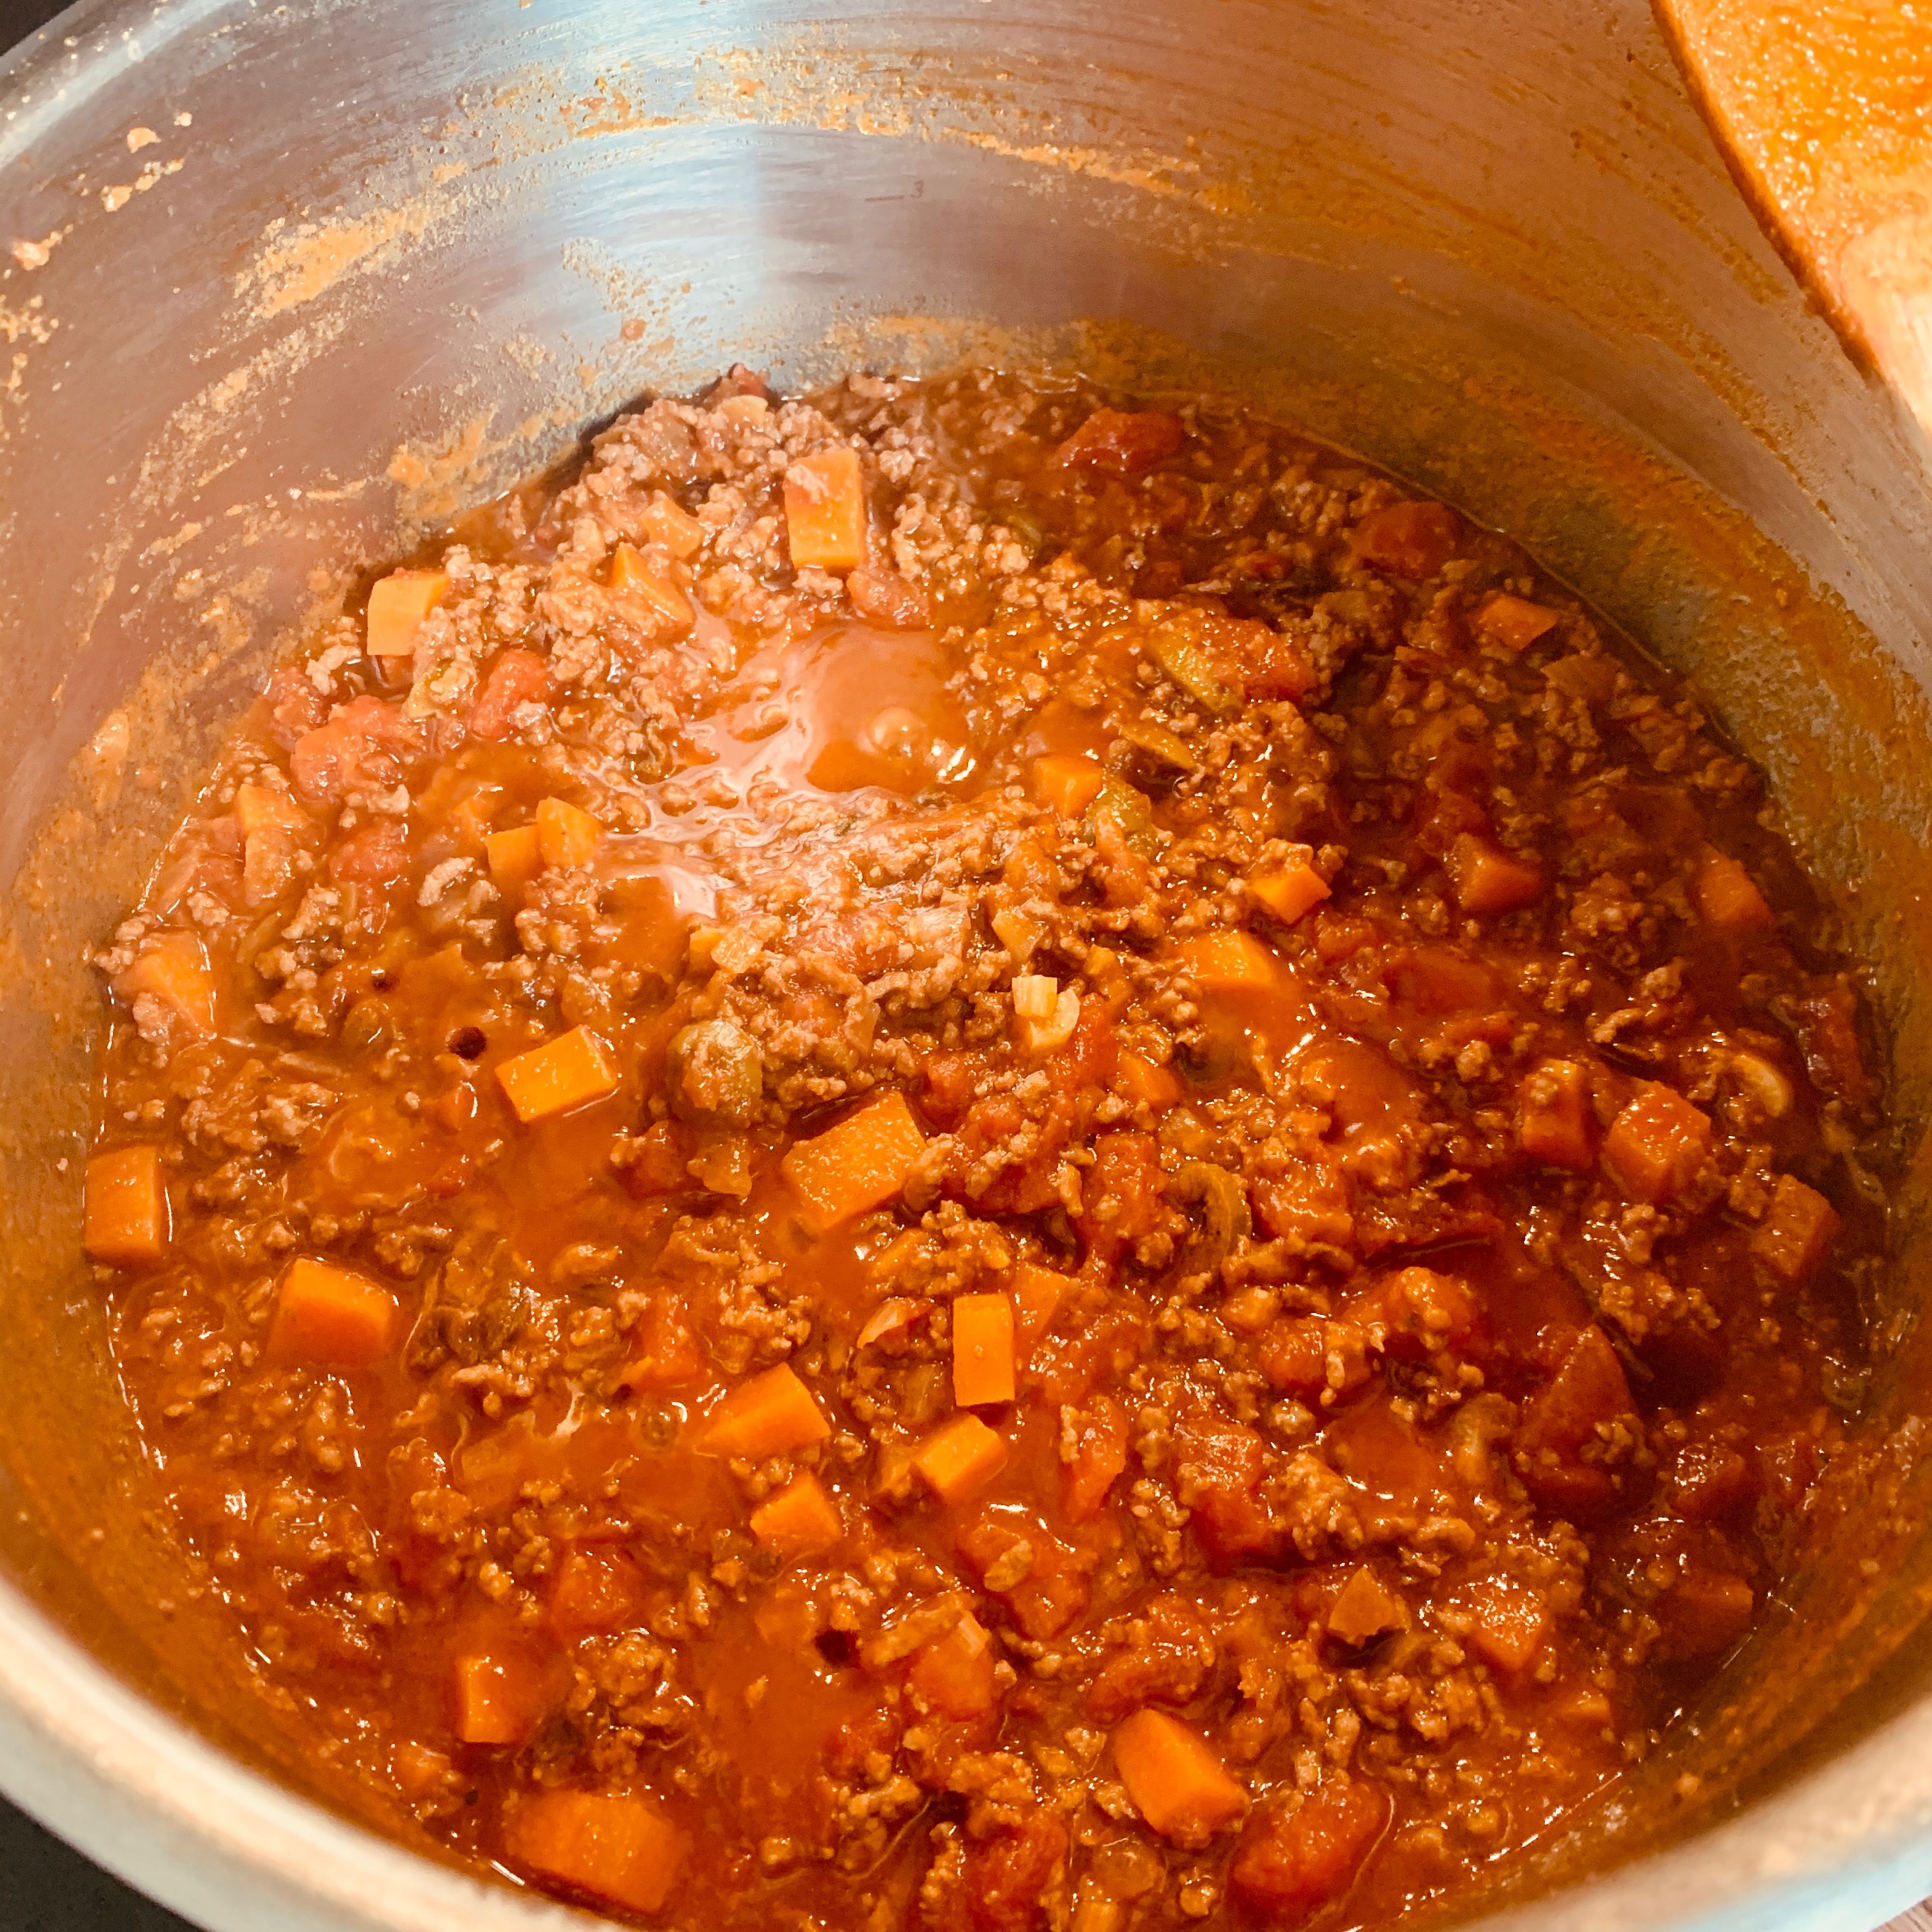 Karotten in Würfel, Knoblauch und Oliven klein schneiden und in den Topf dazu geben. Kurz mit anbraten und dann die Tomaten hinzu. Jetzt alles langsam bei leichter Hitze köcheln lassen. Ca. 45 min